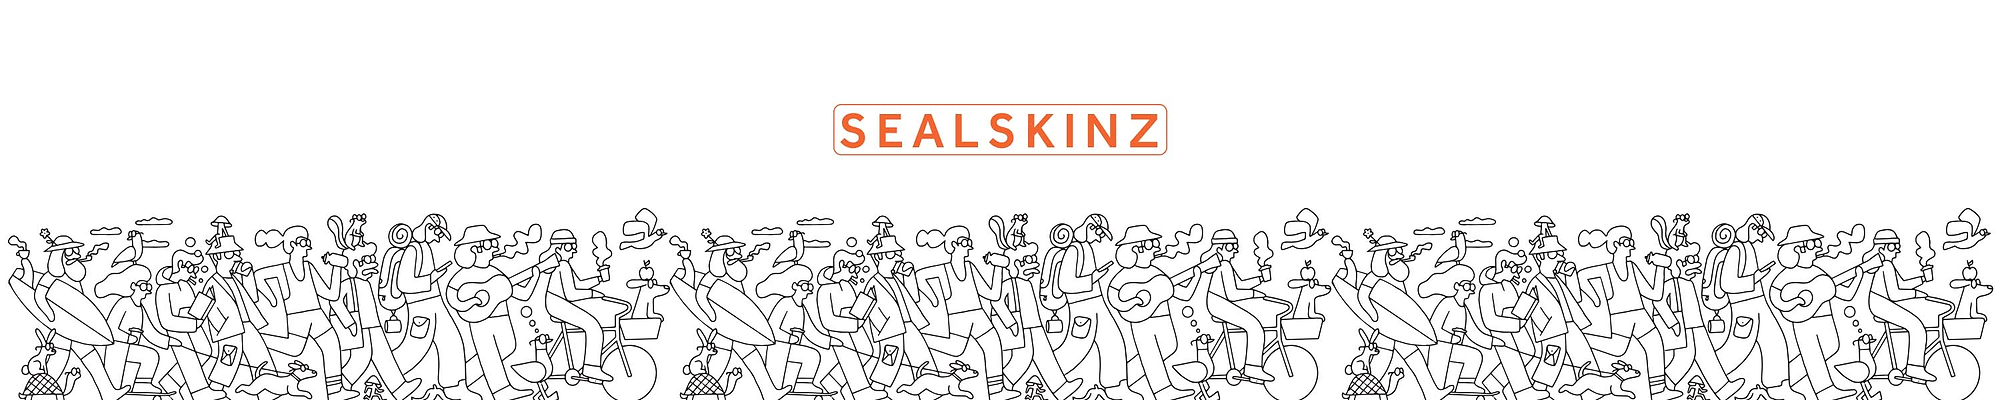 Conceptos erróneos de calcetines impermeables — Sealskinz EU